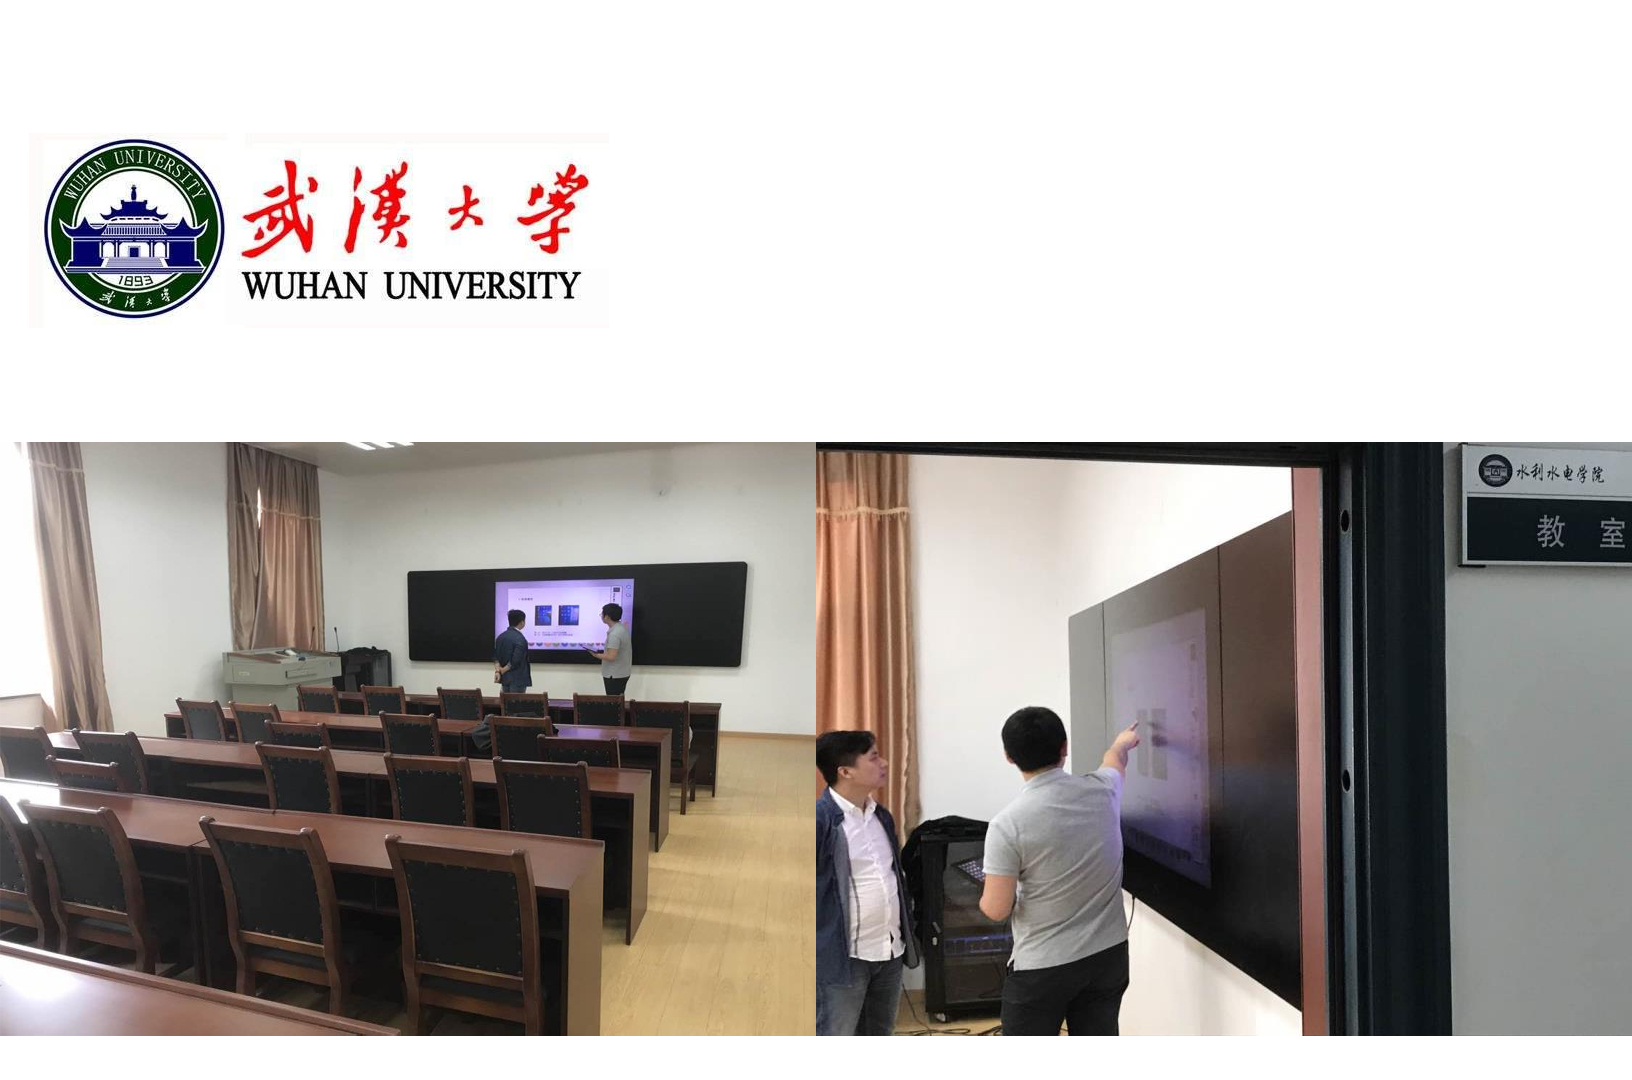 武汉大学-智慧黑板.jpg